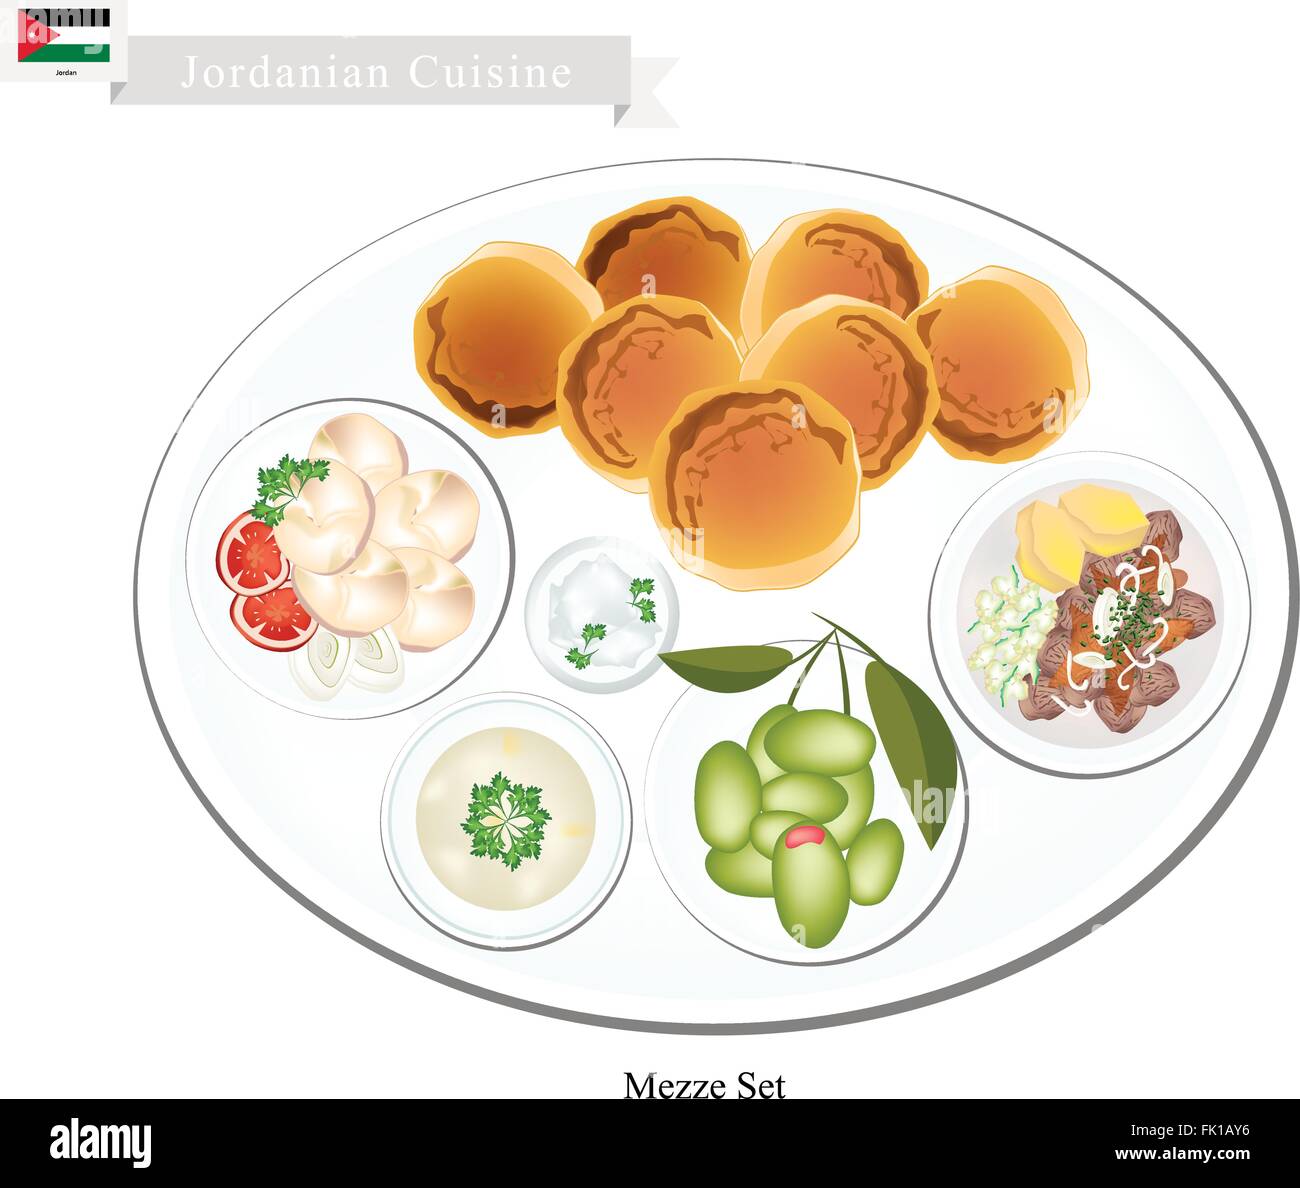 La cuisine jordanienne, Mezze ou sélection de petits plats que des hors-d'œuvre avant le plat principal. L'un des plus populaires lave en Jordanie. Illustration de Vecteur